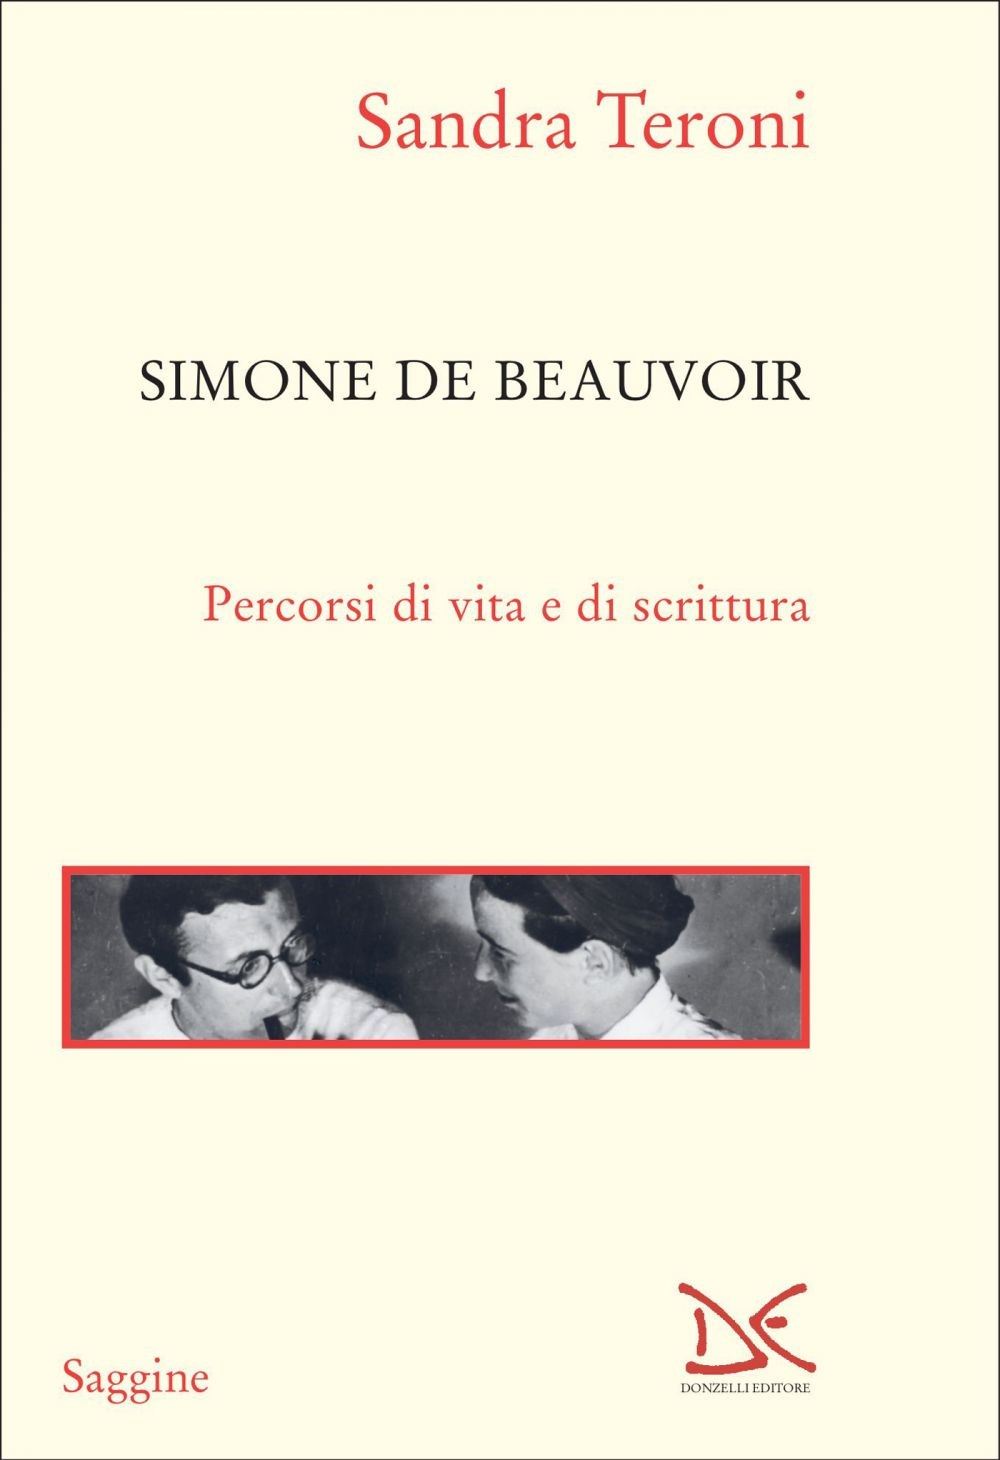 Simone de Beauvoir - Librerie.coop